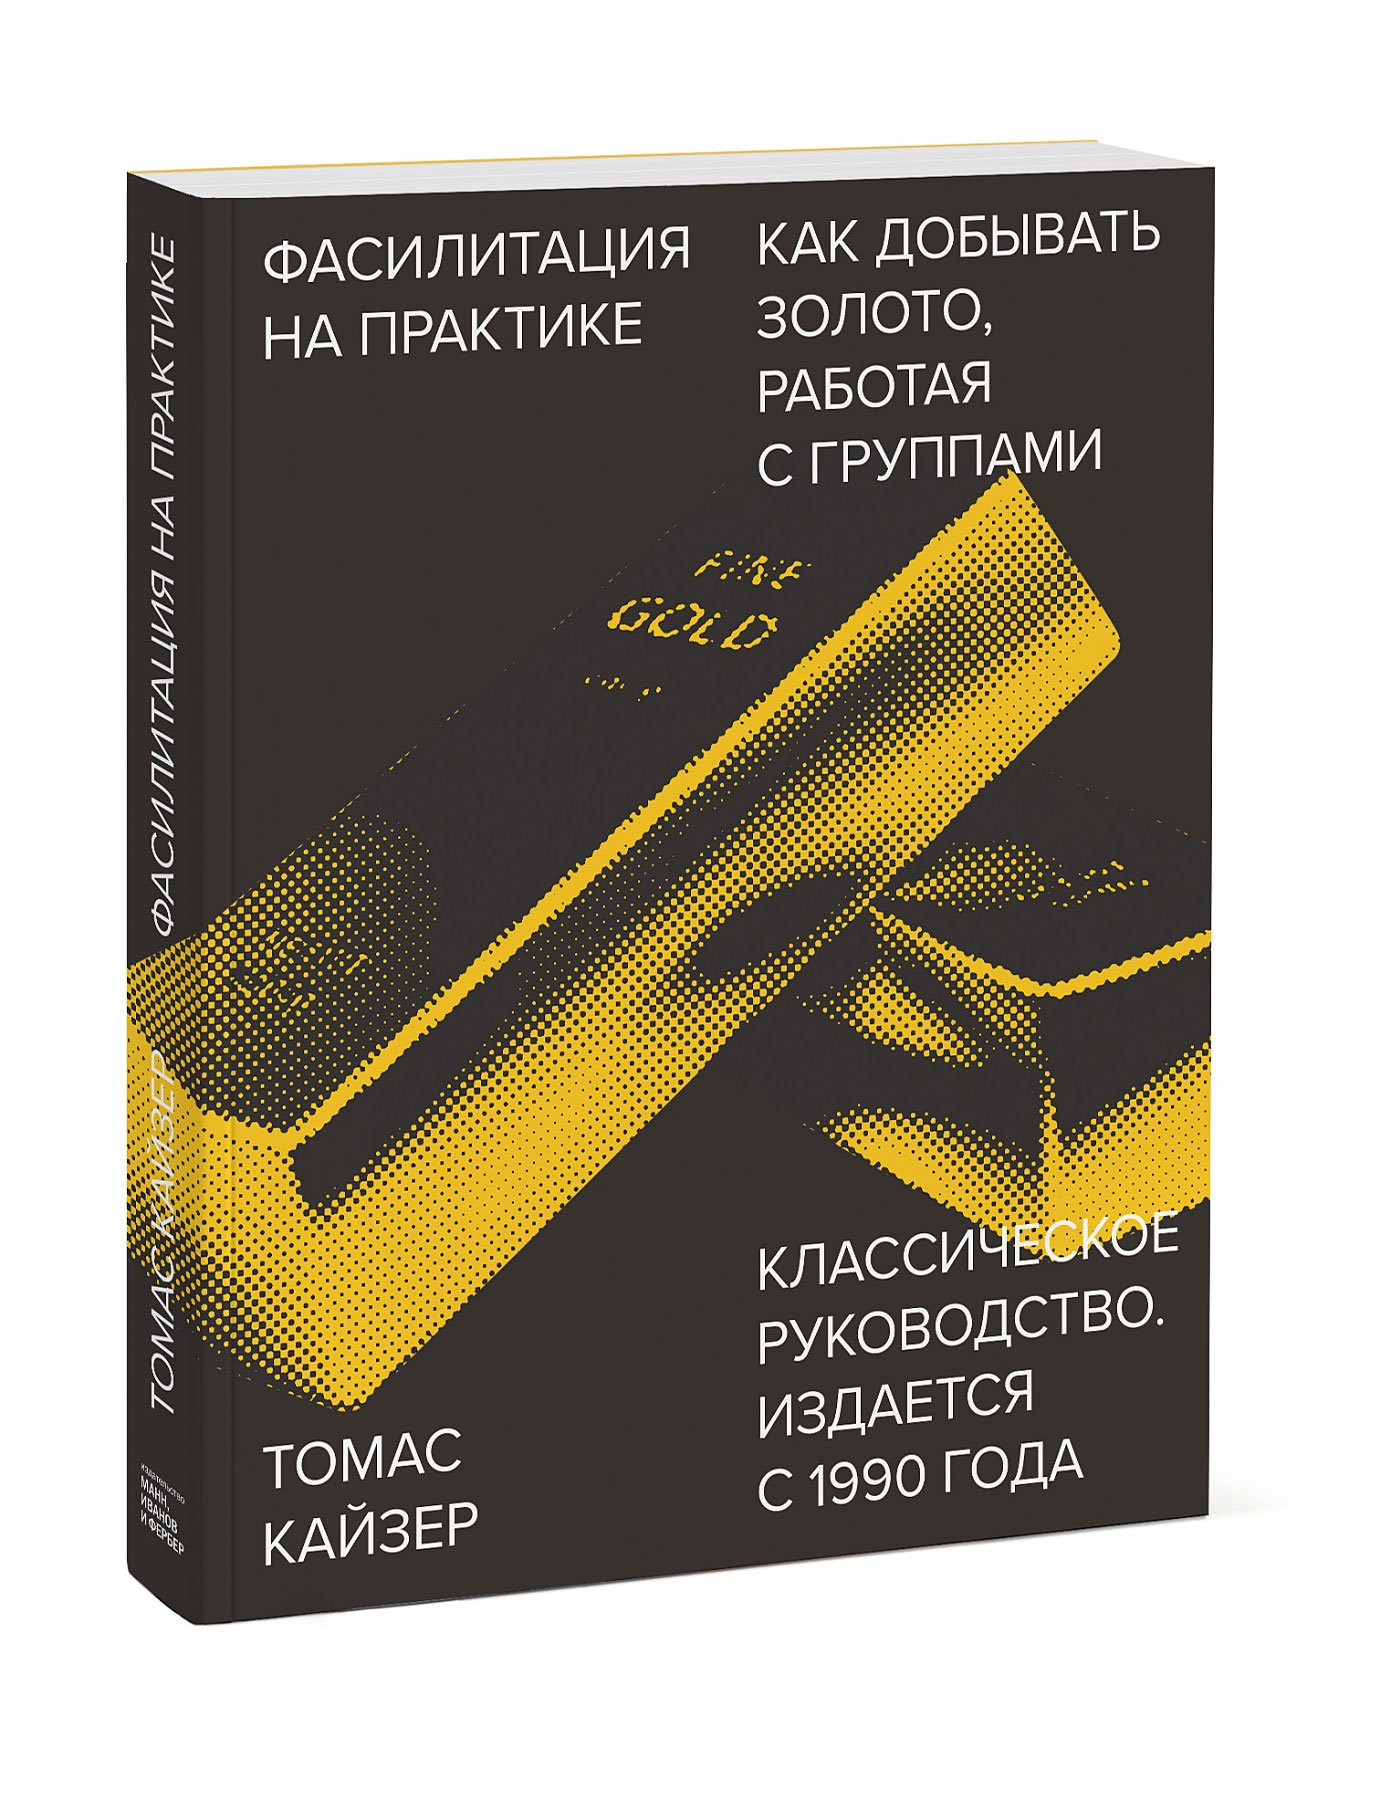 Zakazat.ru: Фасилитация на практике. Как добывать золото, работая с группами. Томас Кайзер